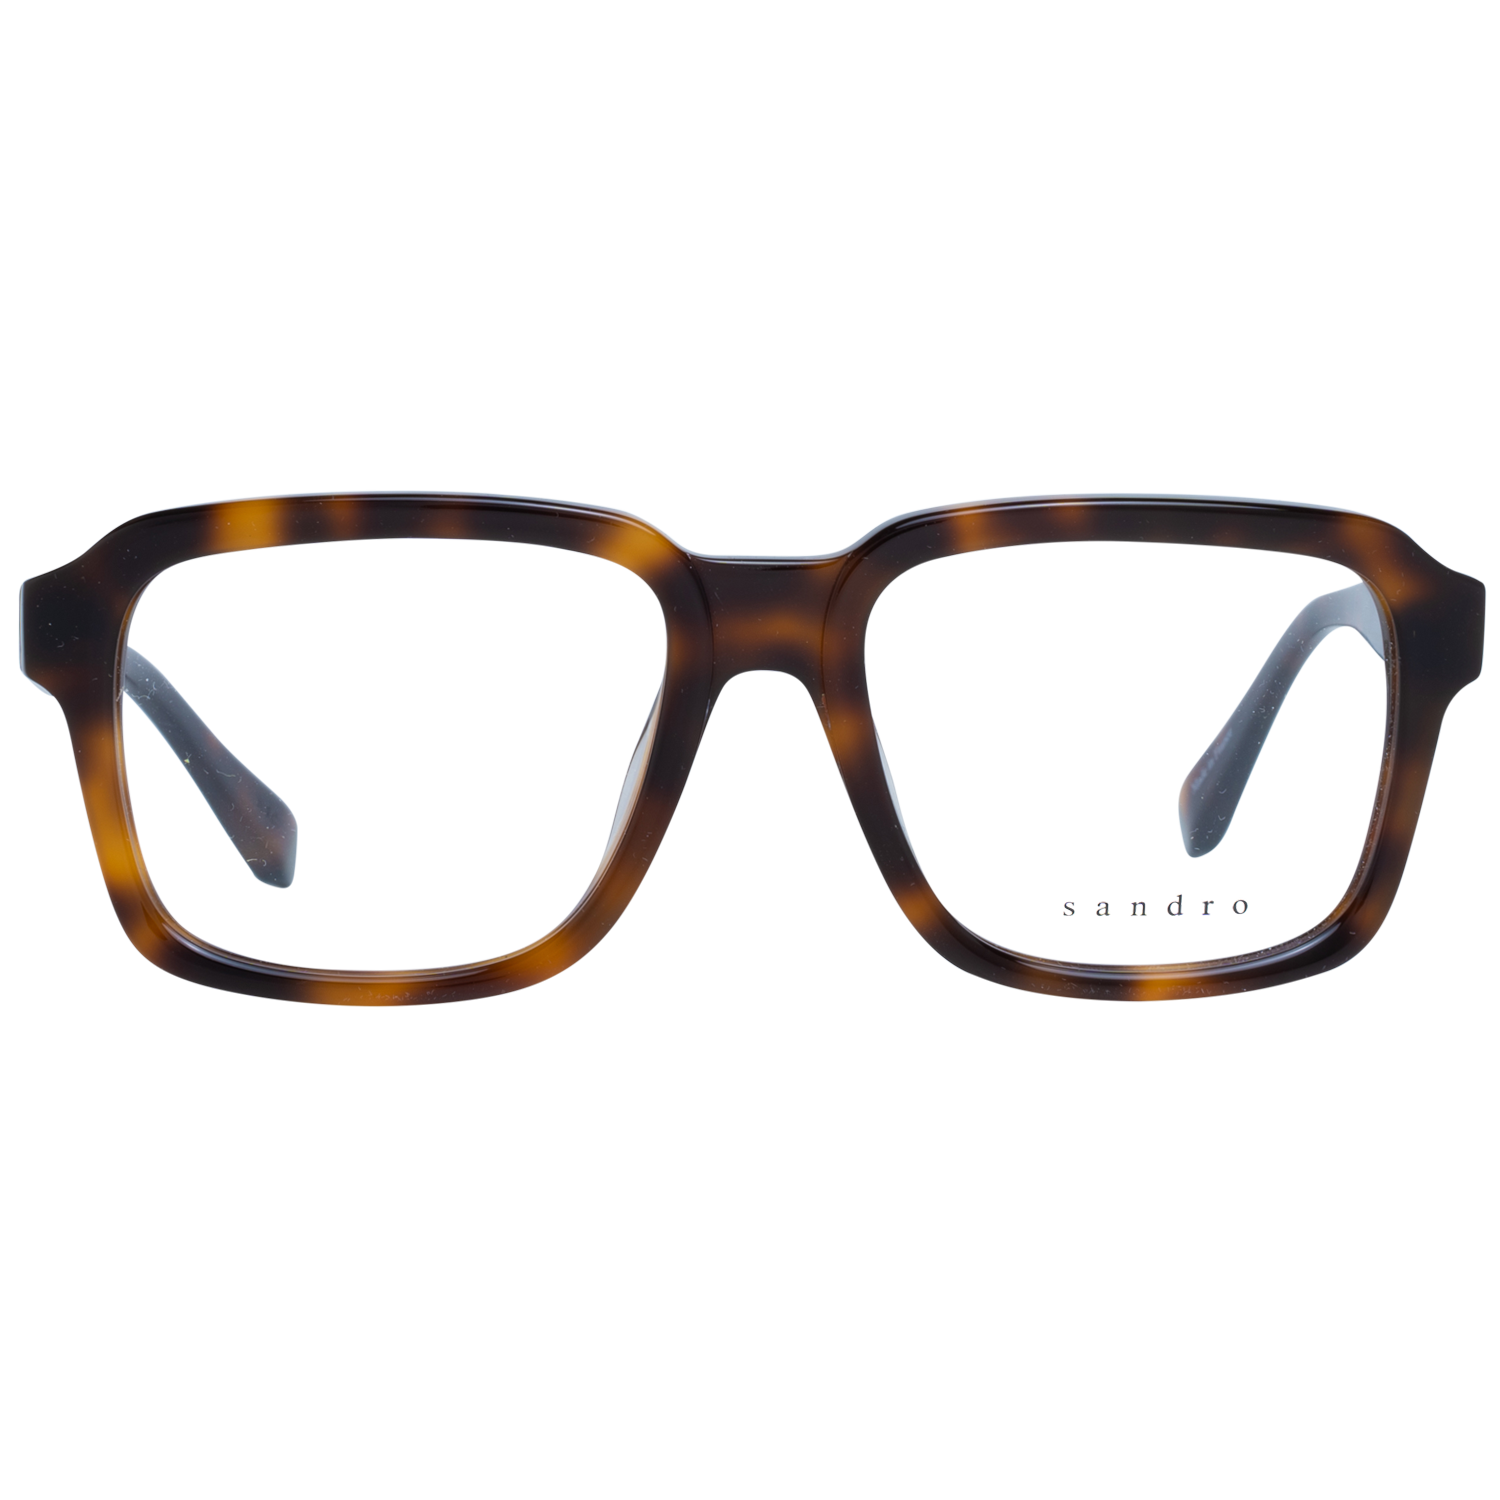 Sandro Frames Sandro Glasses Men Brown Havana Square Frames SD1000 201 53 Eyeglasses Eyewear UK USA Australia 